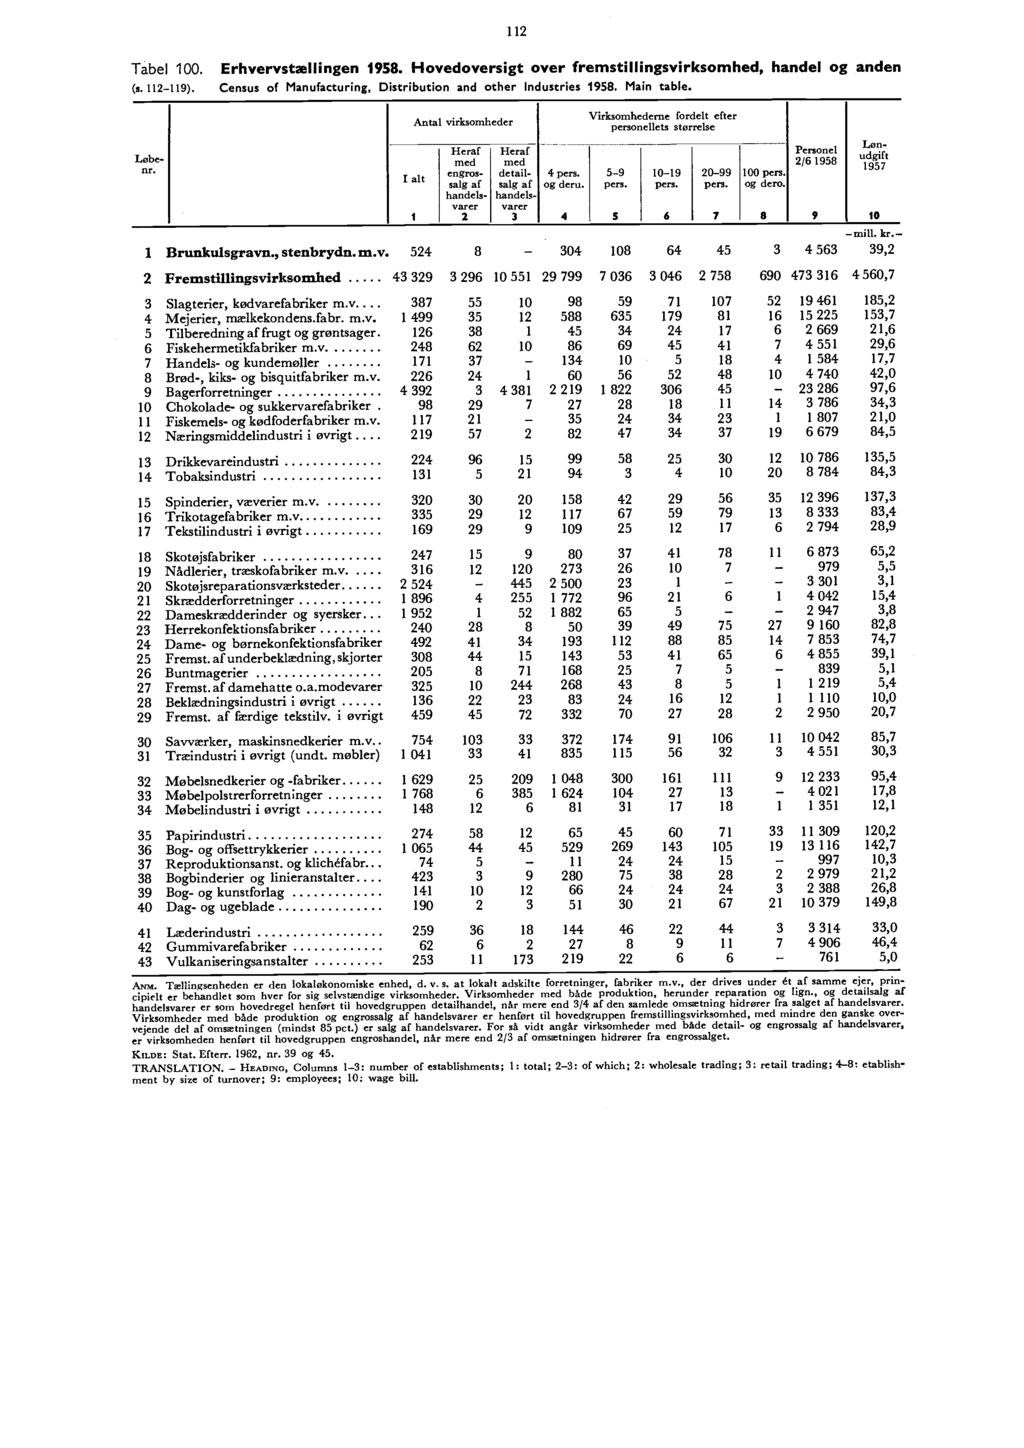 112 Tabel 100. (s.112-119). Erhvervstællingen 1958. Hovedoversigt over fremstillingsvirksomhed, handel og anden Census of Manufacturing, Distribution and other Industries 1958. Main table.